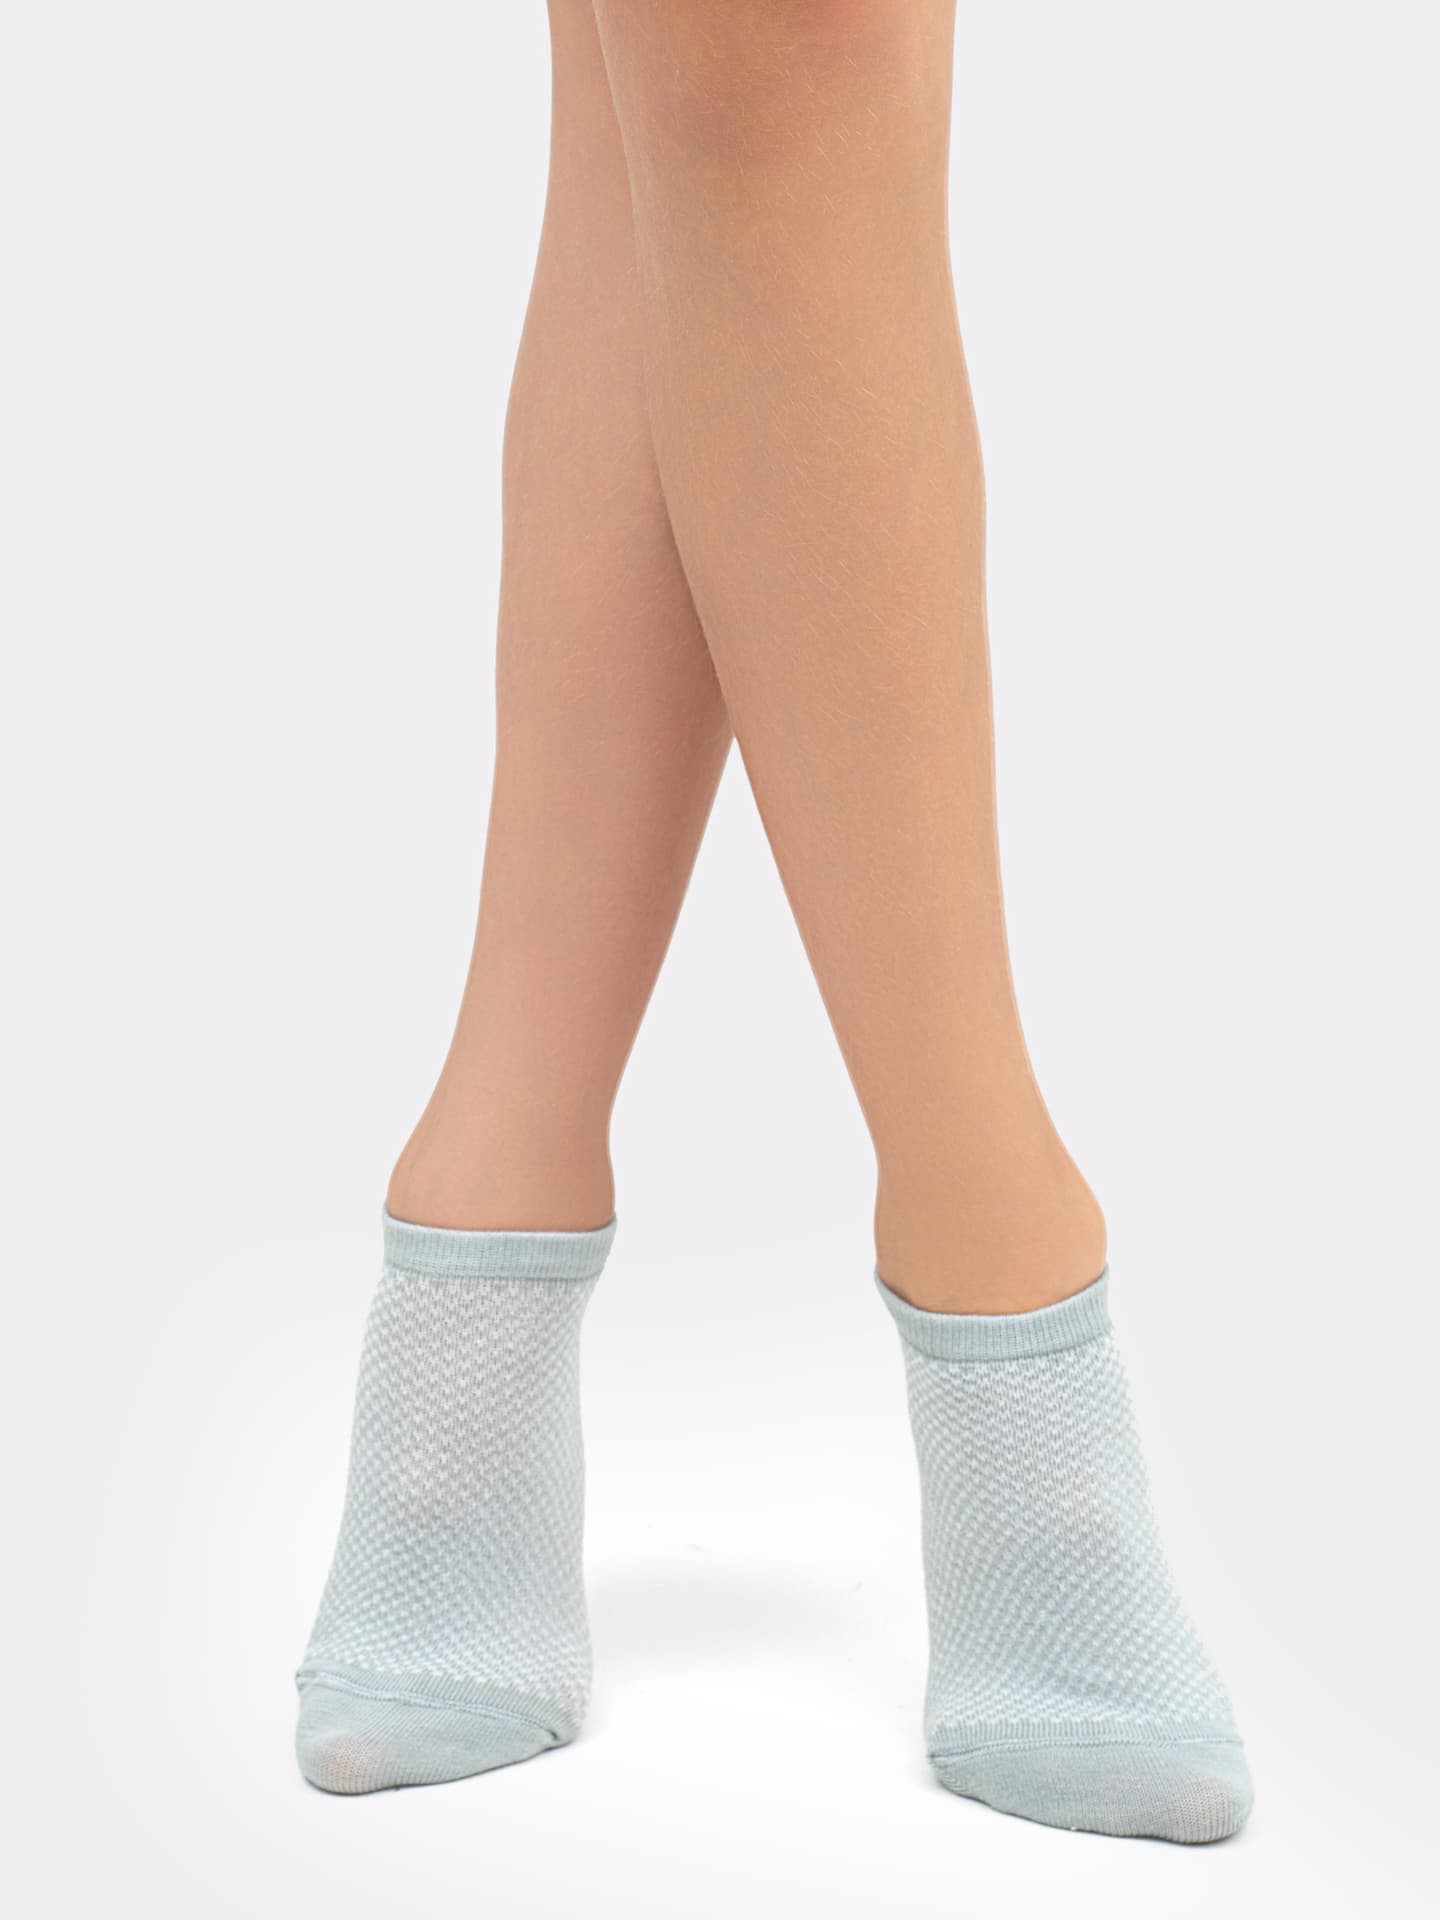 Короткие детские носки светло-оливкового цвета с сеткой